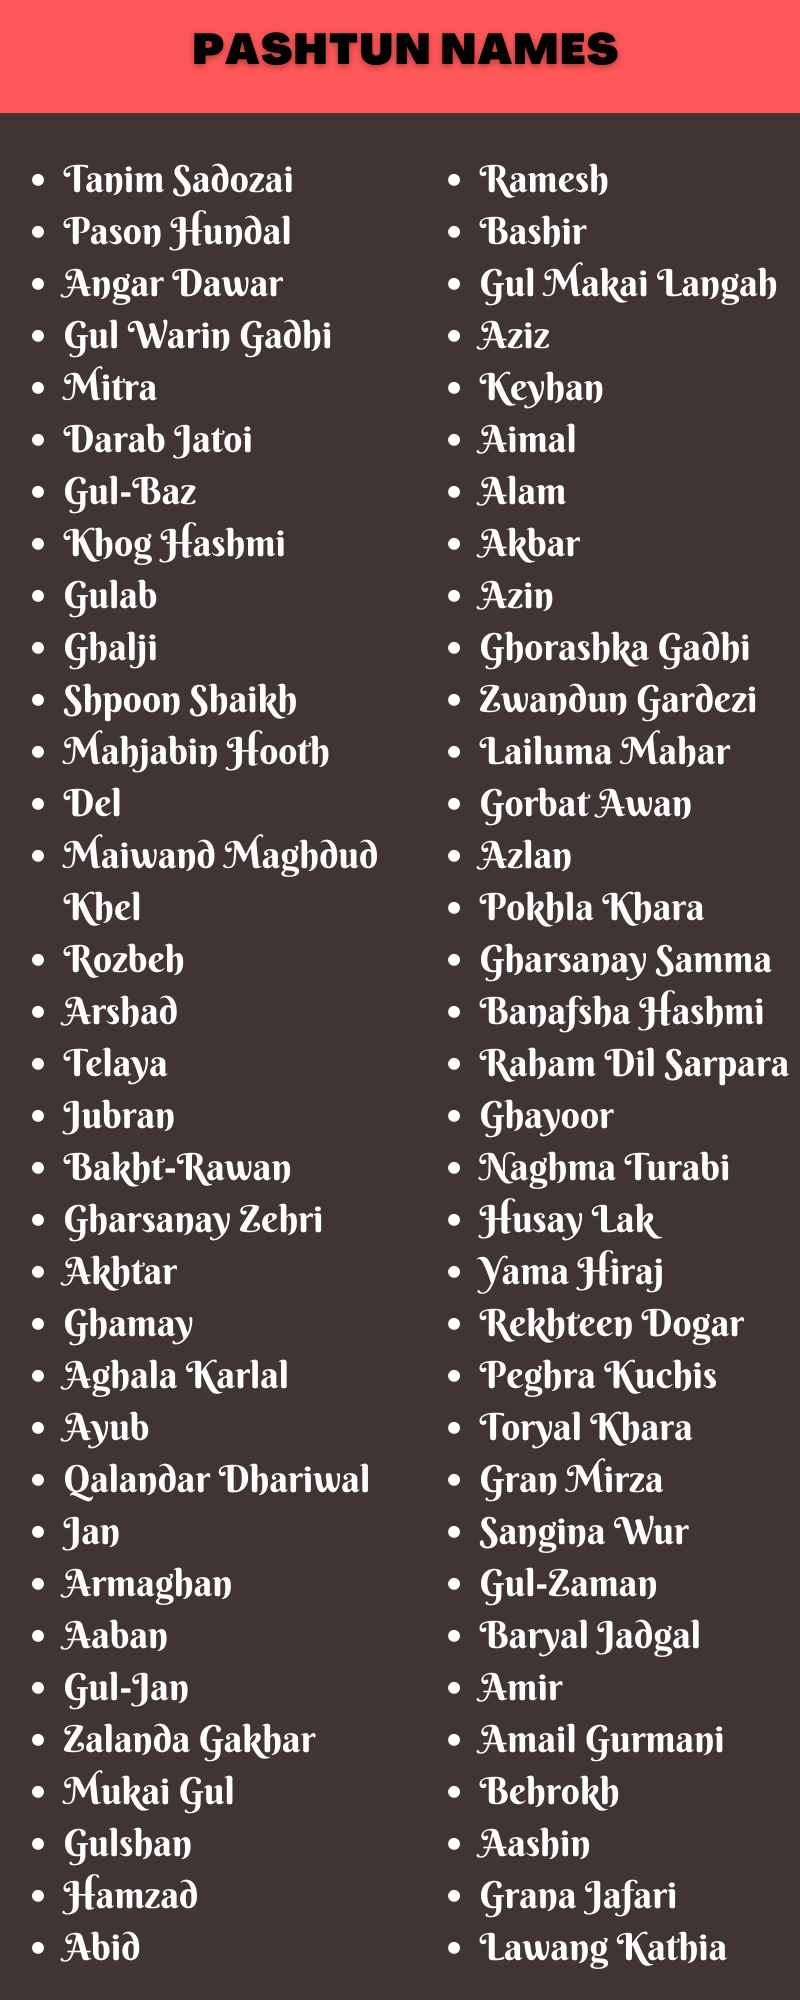 Pashtun Names